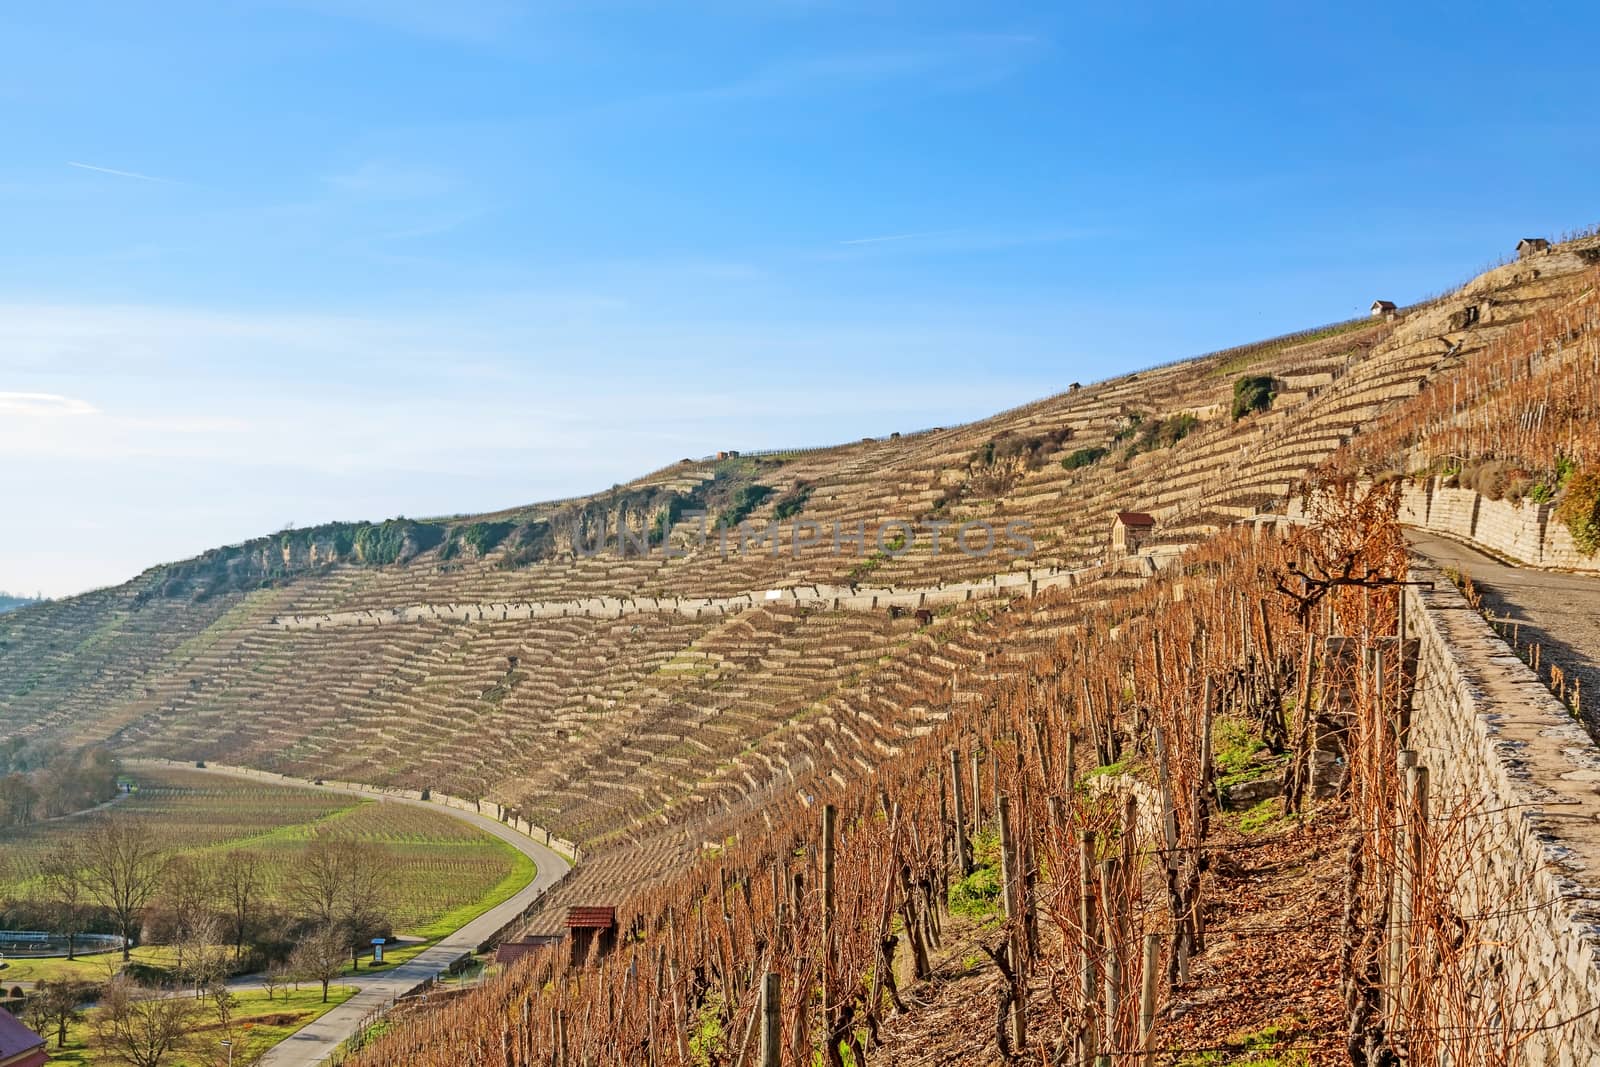 View over the vineyards (Hessigheimer Felsengaerten)